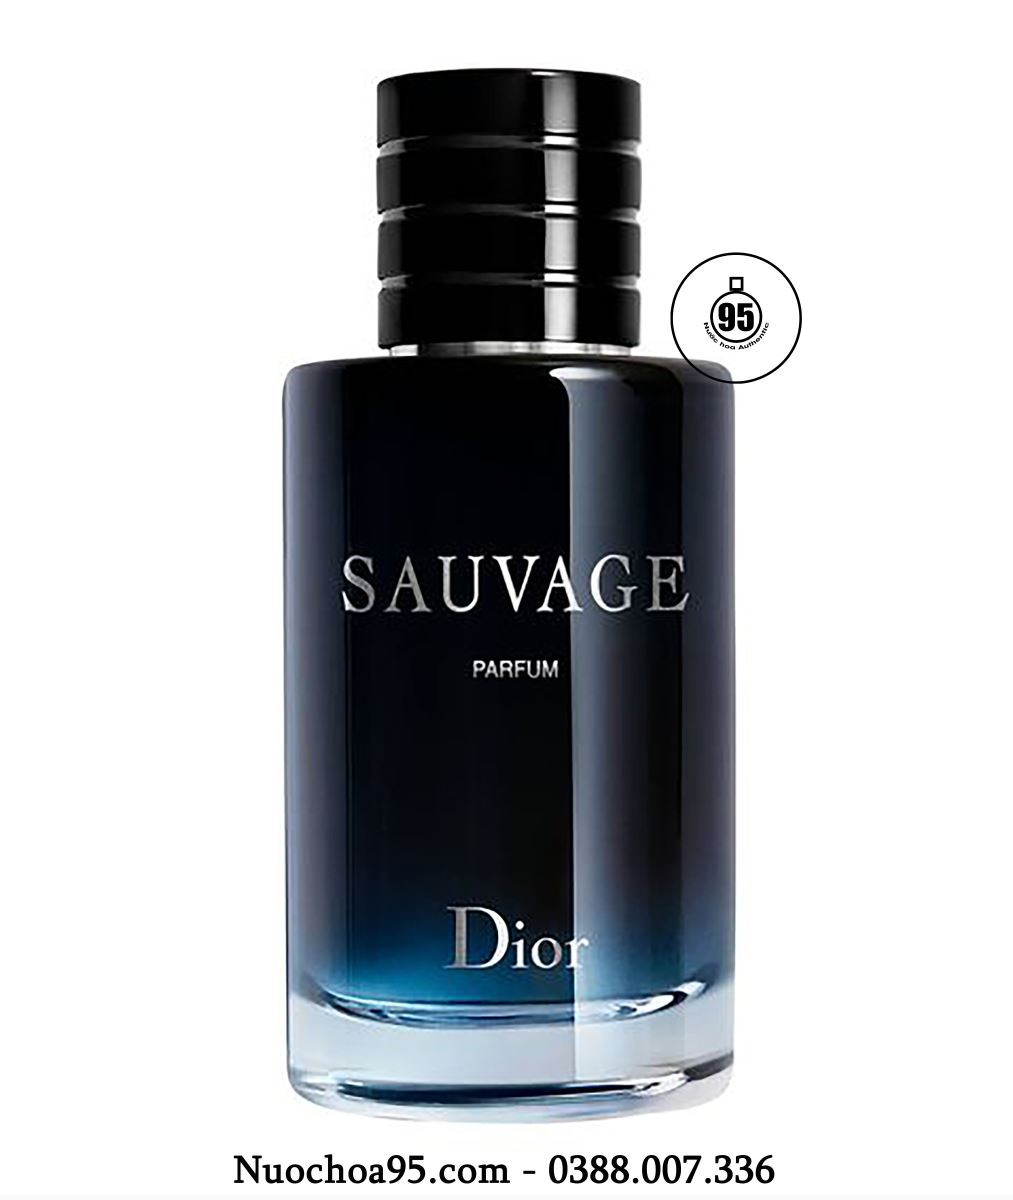 Nước hoa Sauvage Dior Parfum - Ảnh 2